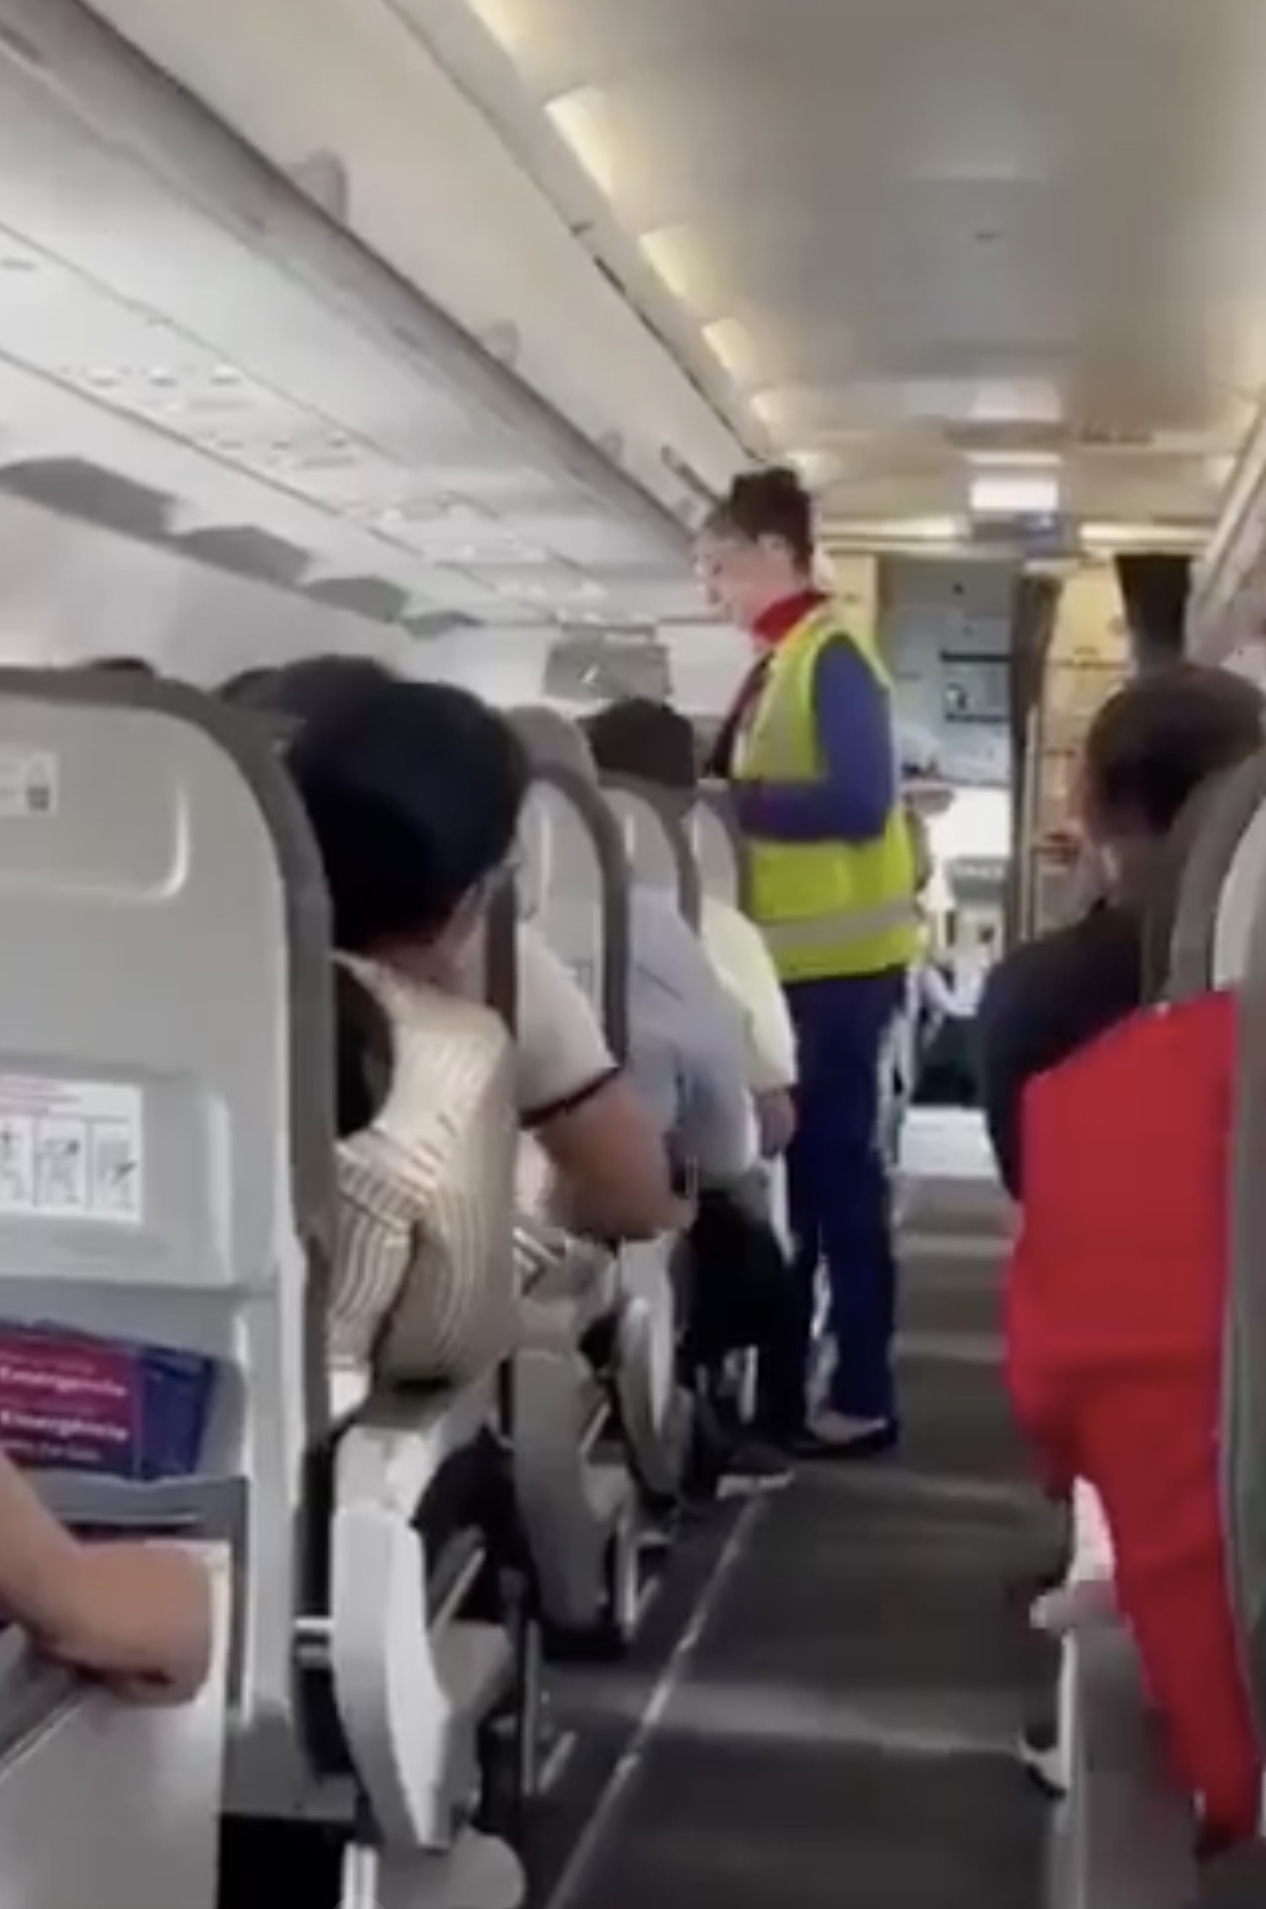 Chuyến bay bị hoãn vì toàn bộ hành khách đòi đuổi 1 bé trai xuống máy bay, nguyên do sự việc bất ngờ được ủng hộ- Ảnh 1.